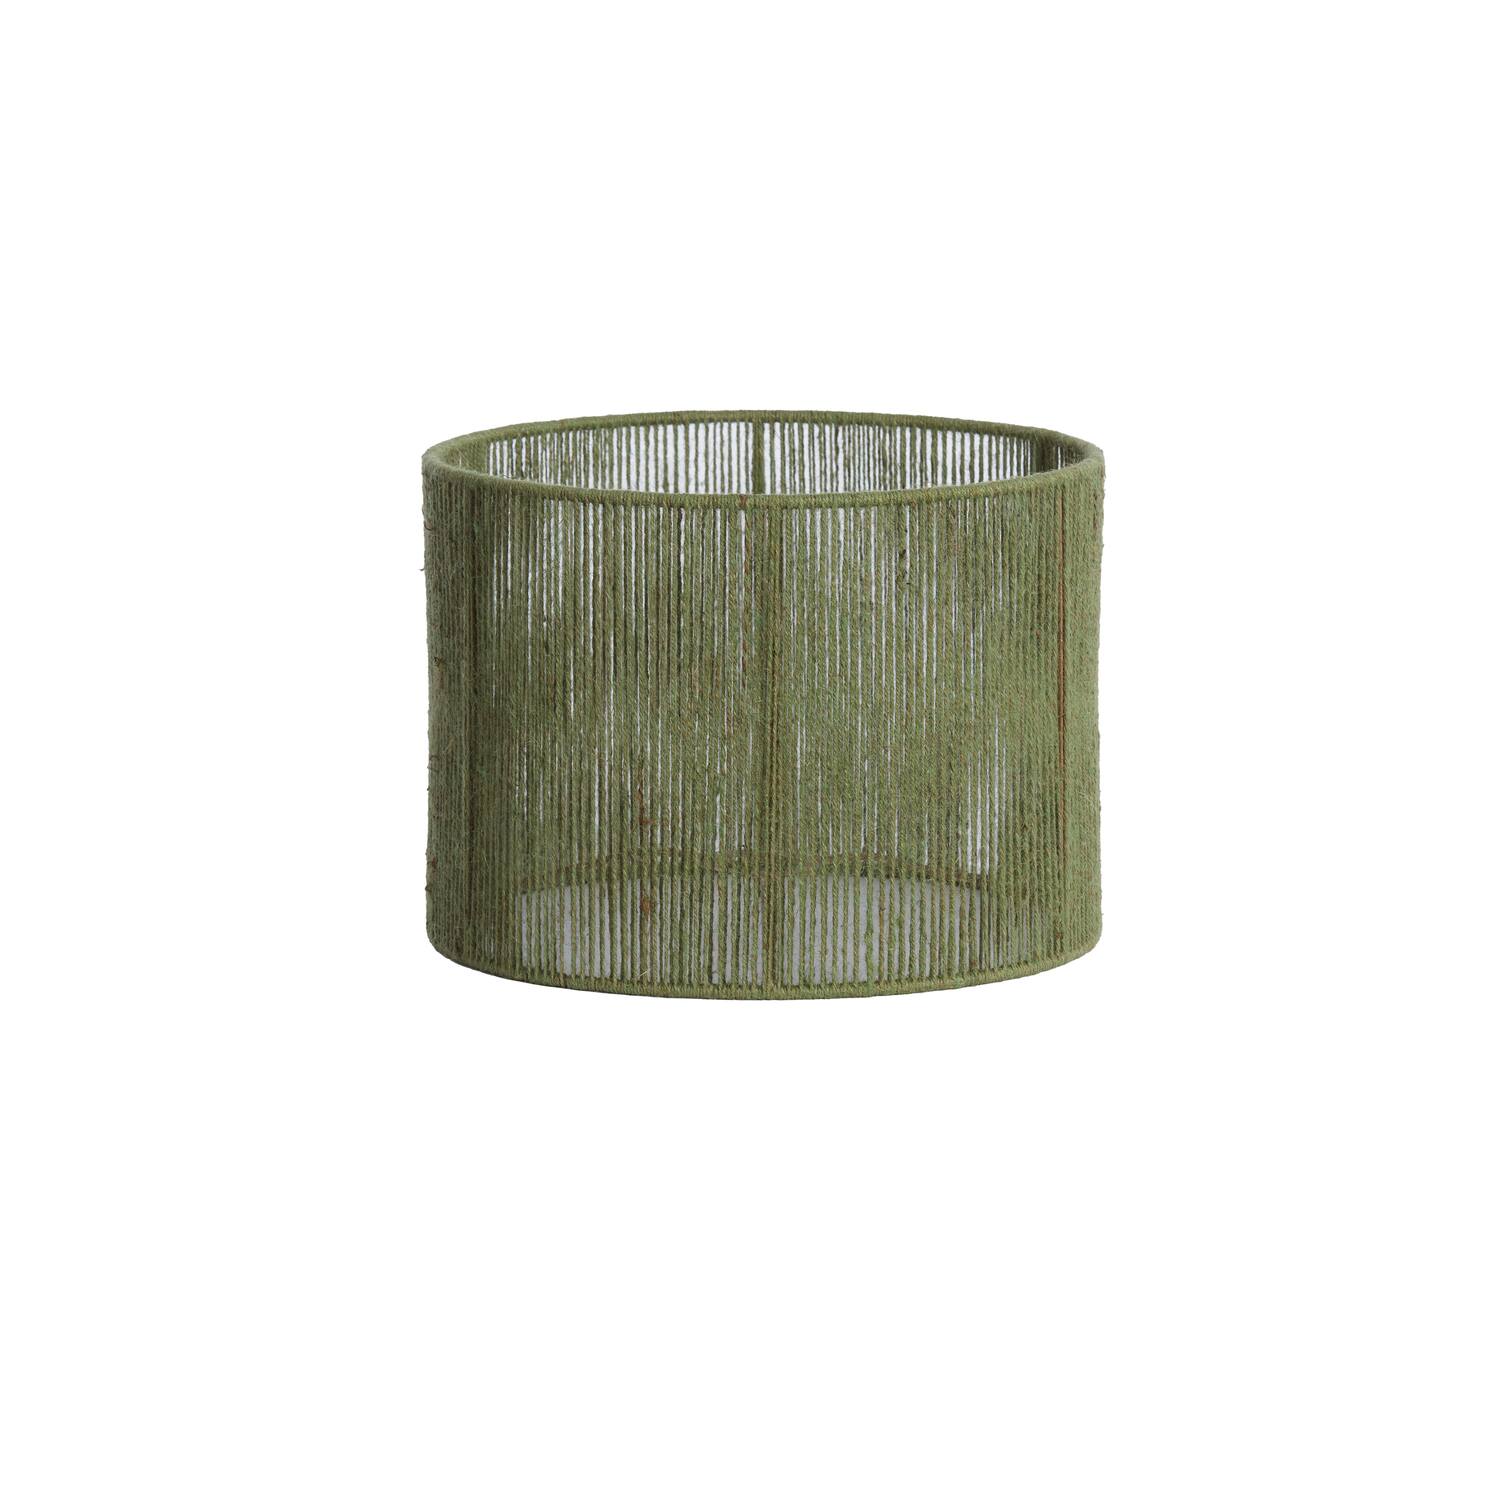 Shade cylinder 25-25-18 cm TOSSA jute green